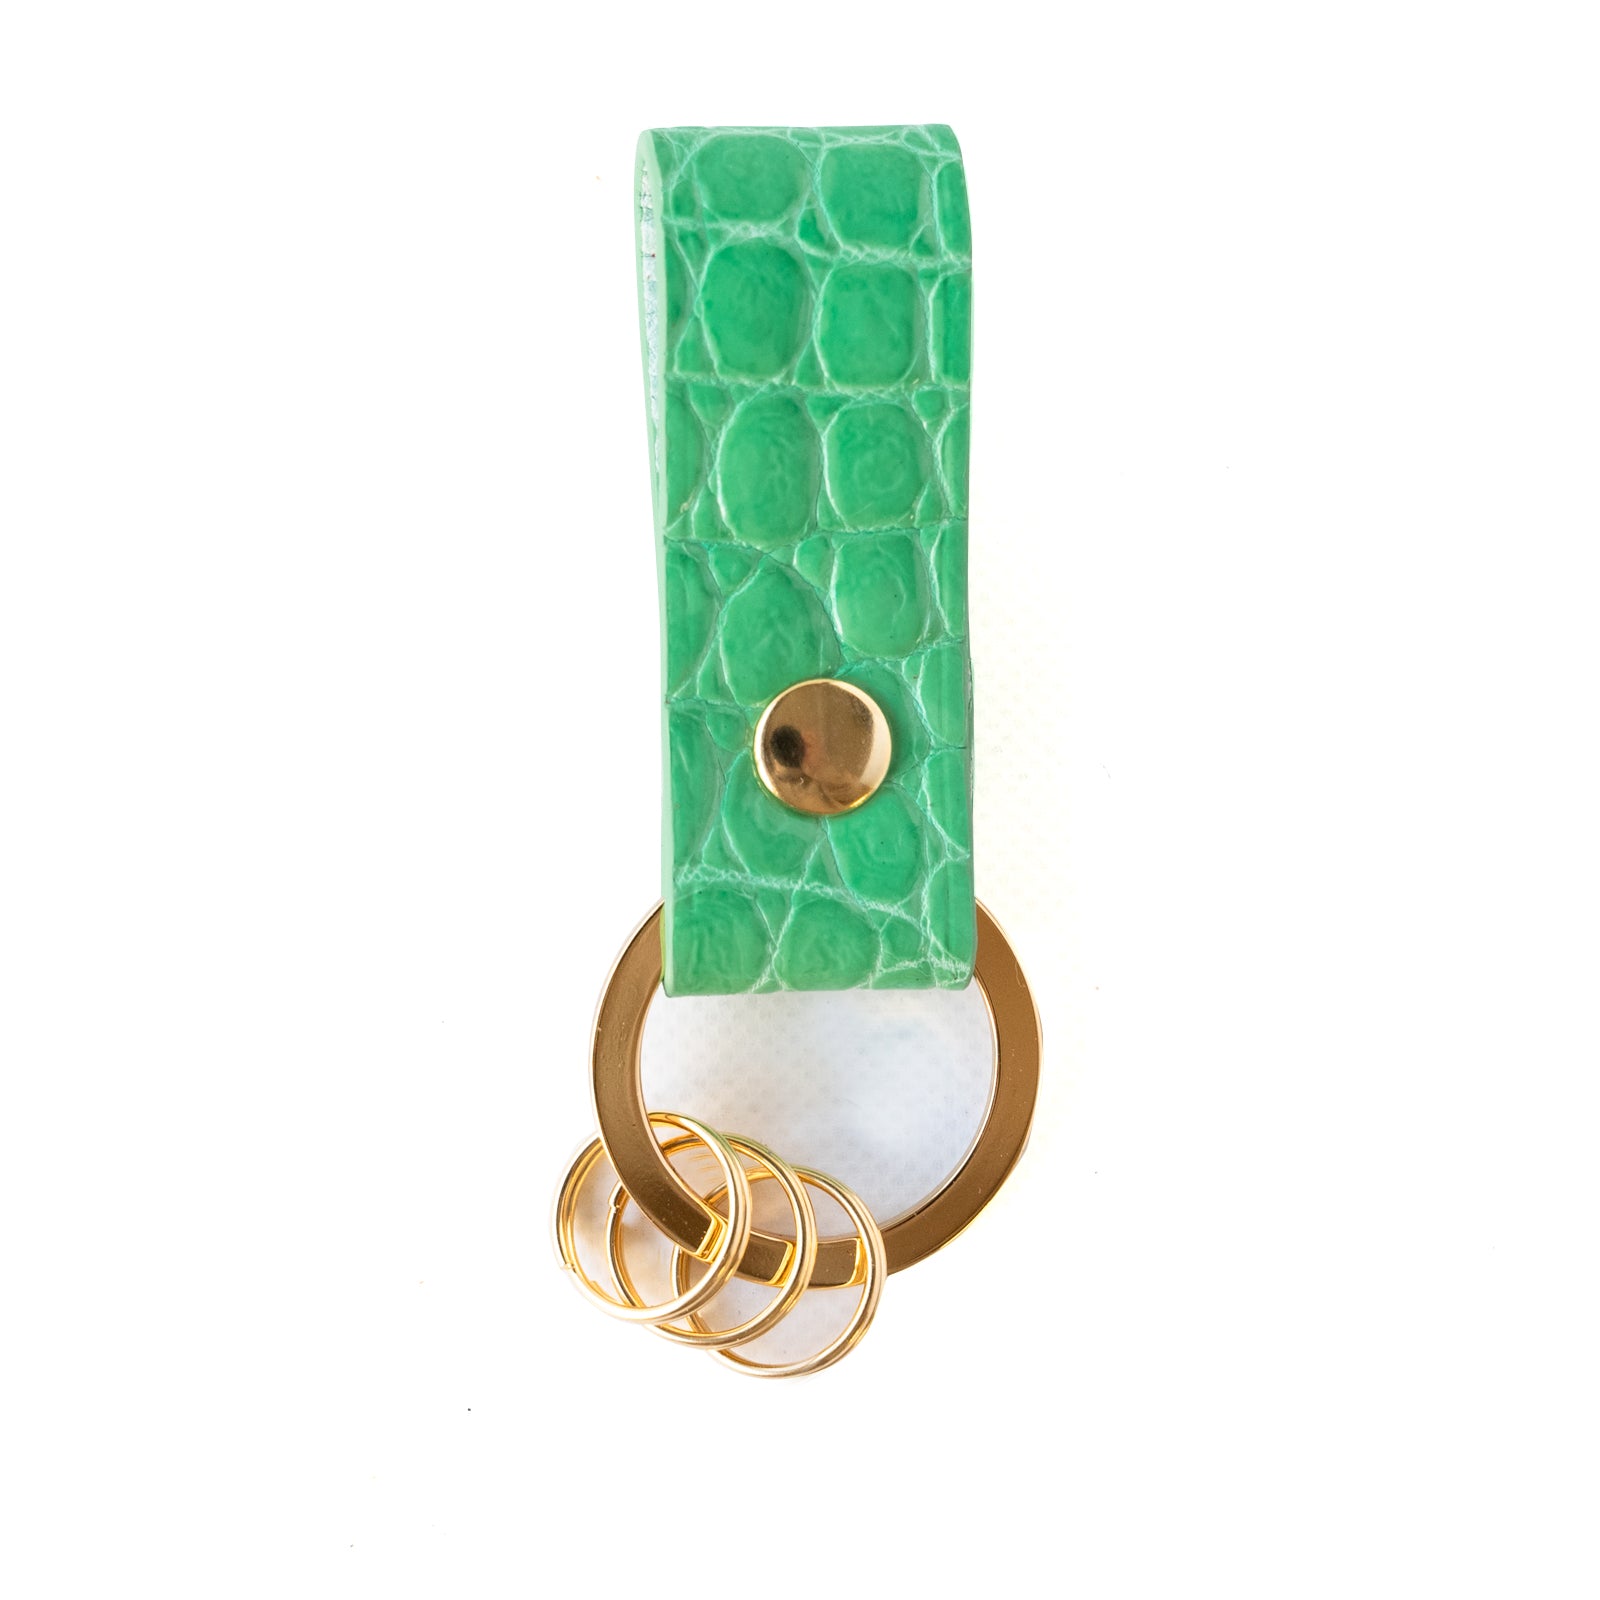 Leather key ring Crocodile (shiny) / Turquoise